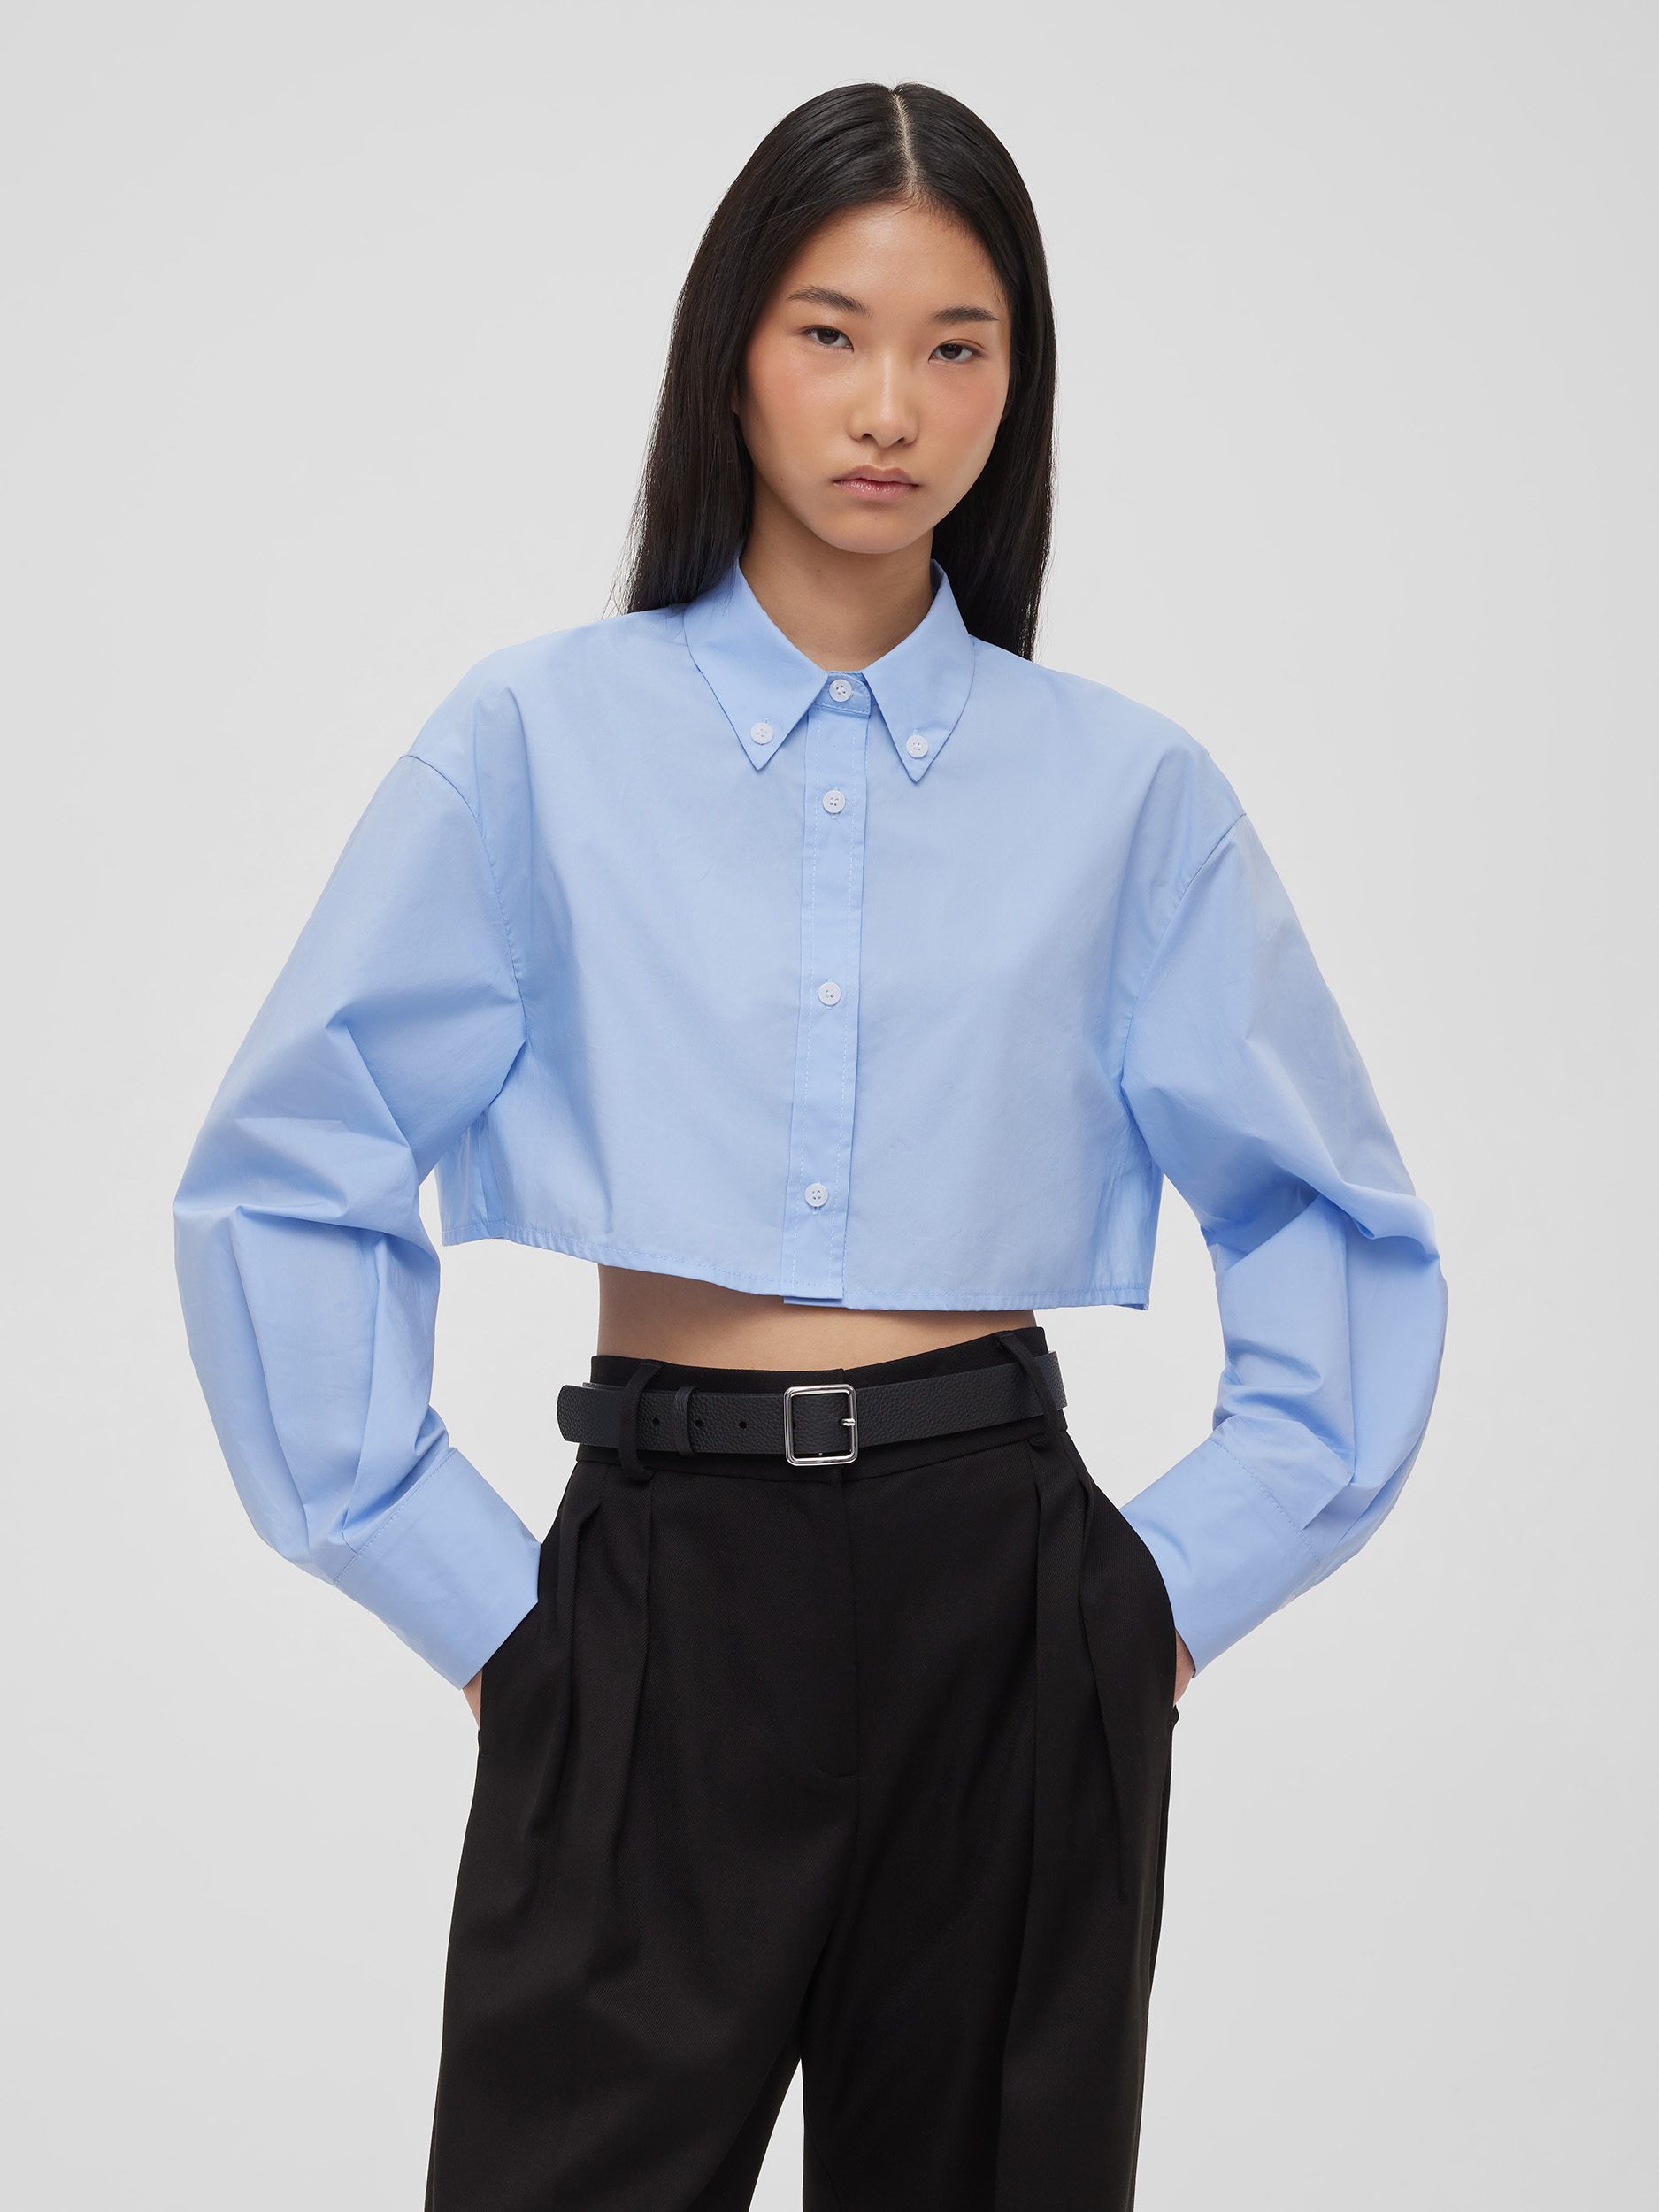 Рубашка женская короткая из хлопка, цвет – светло-голубой фото